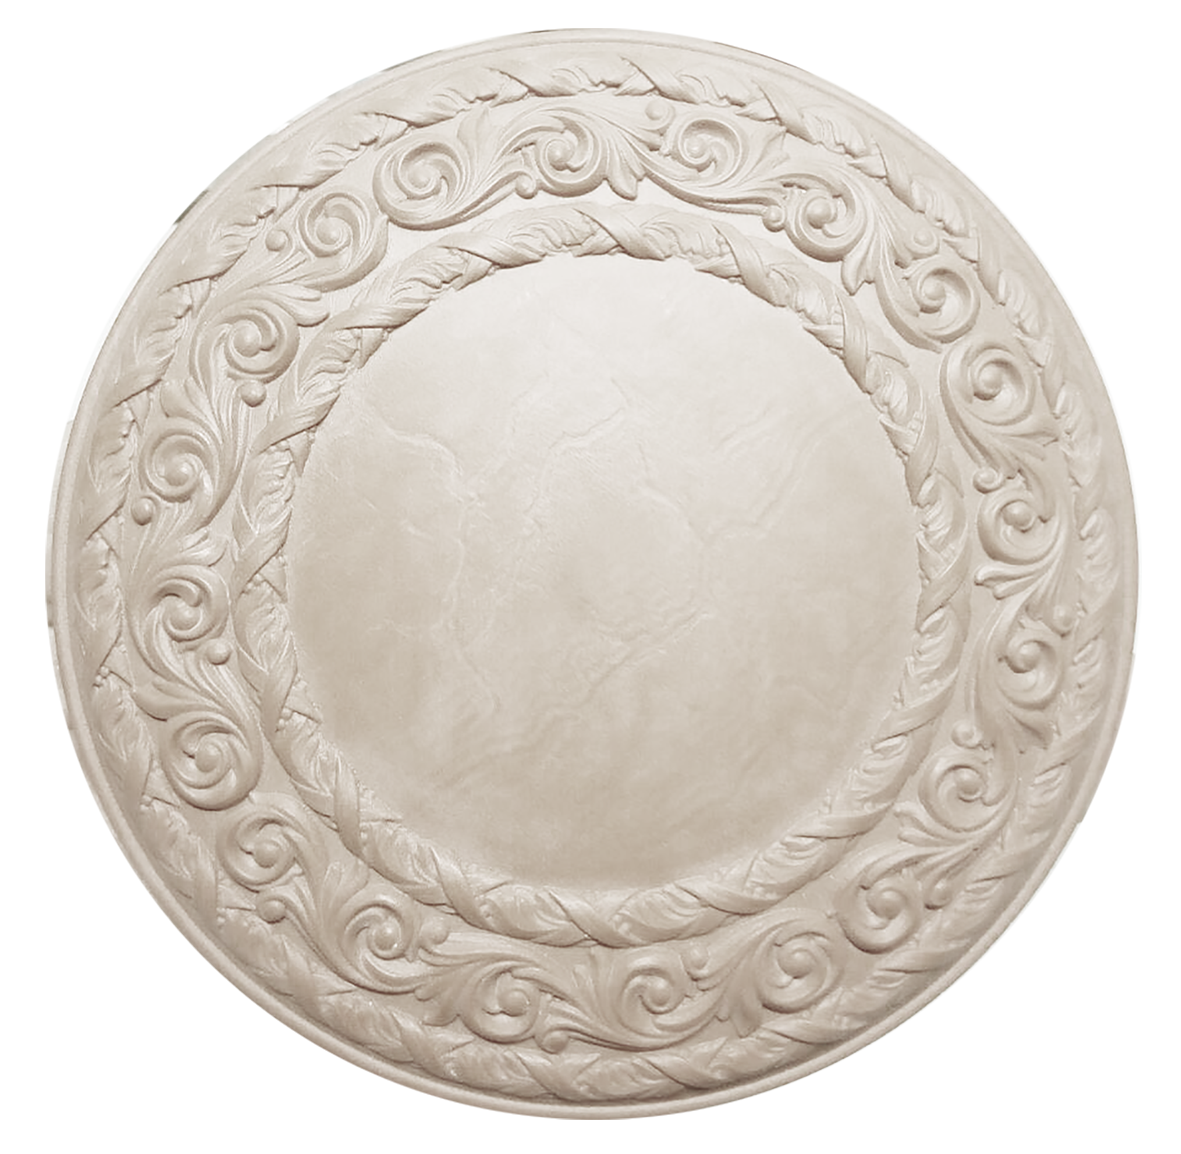    Gracia ceramica  lassic beige  01 1515 